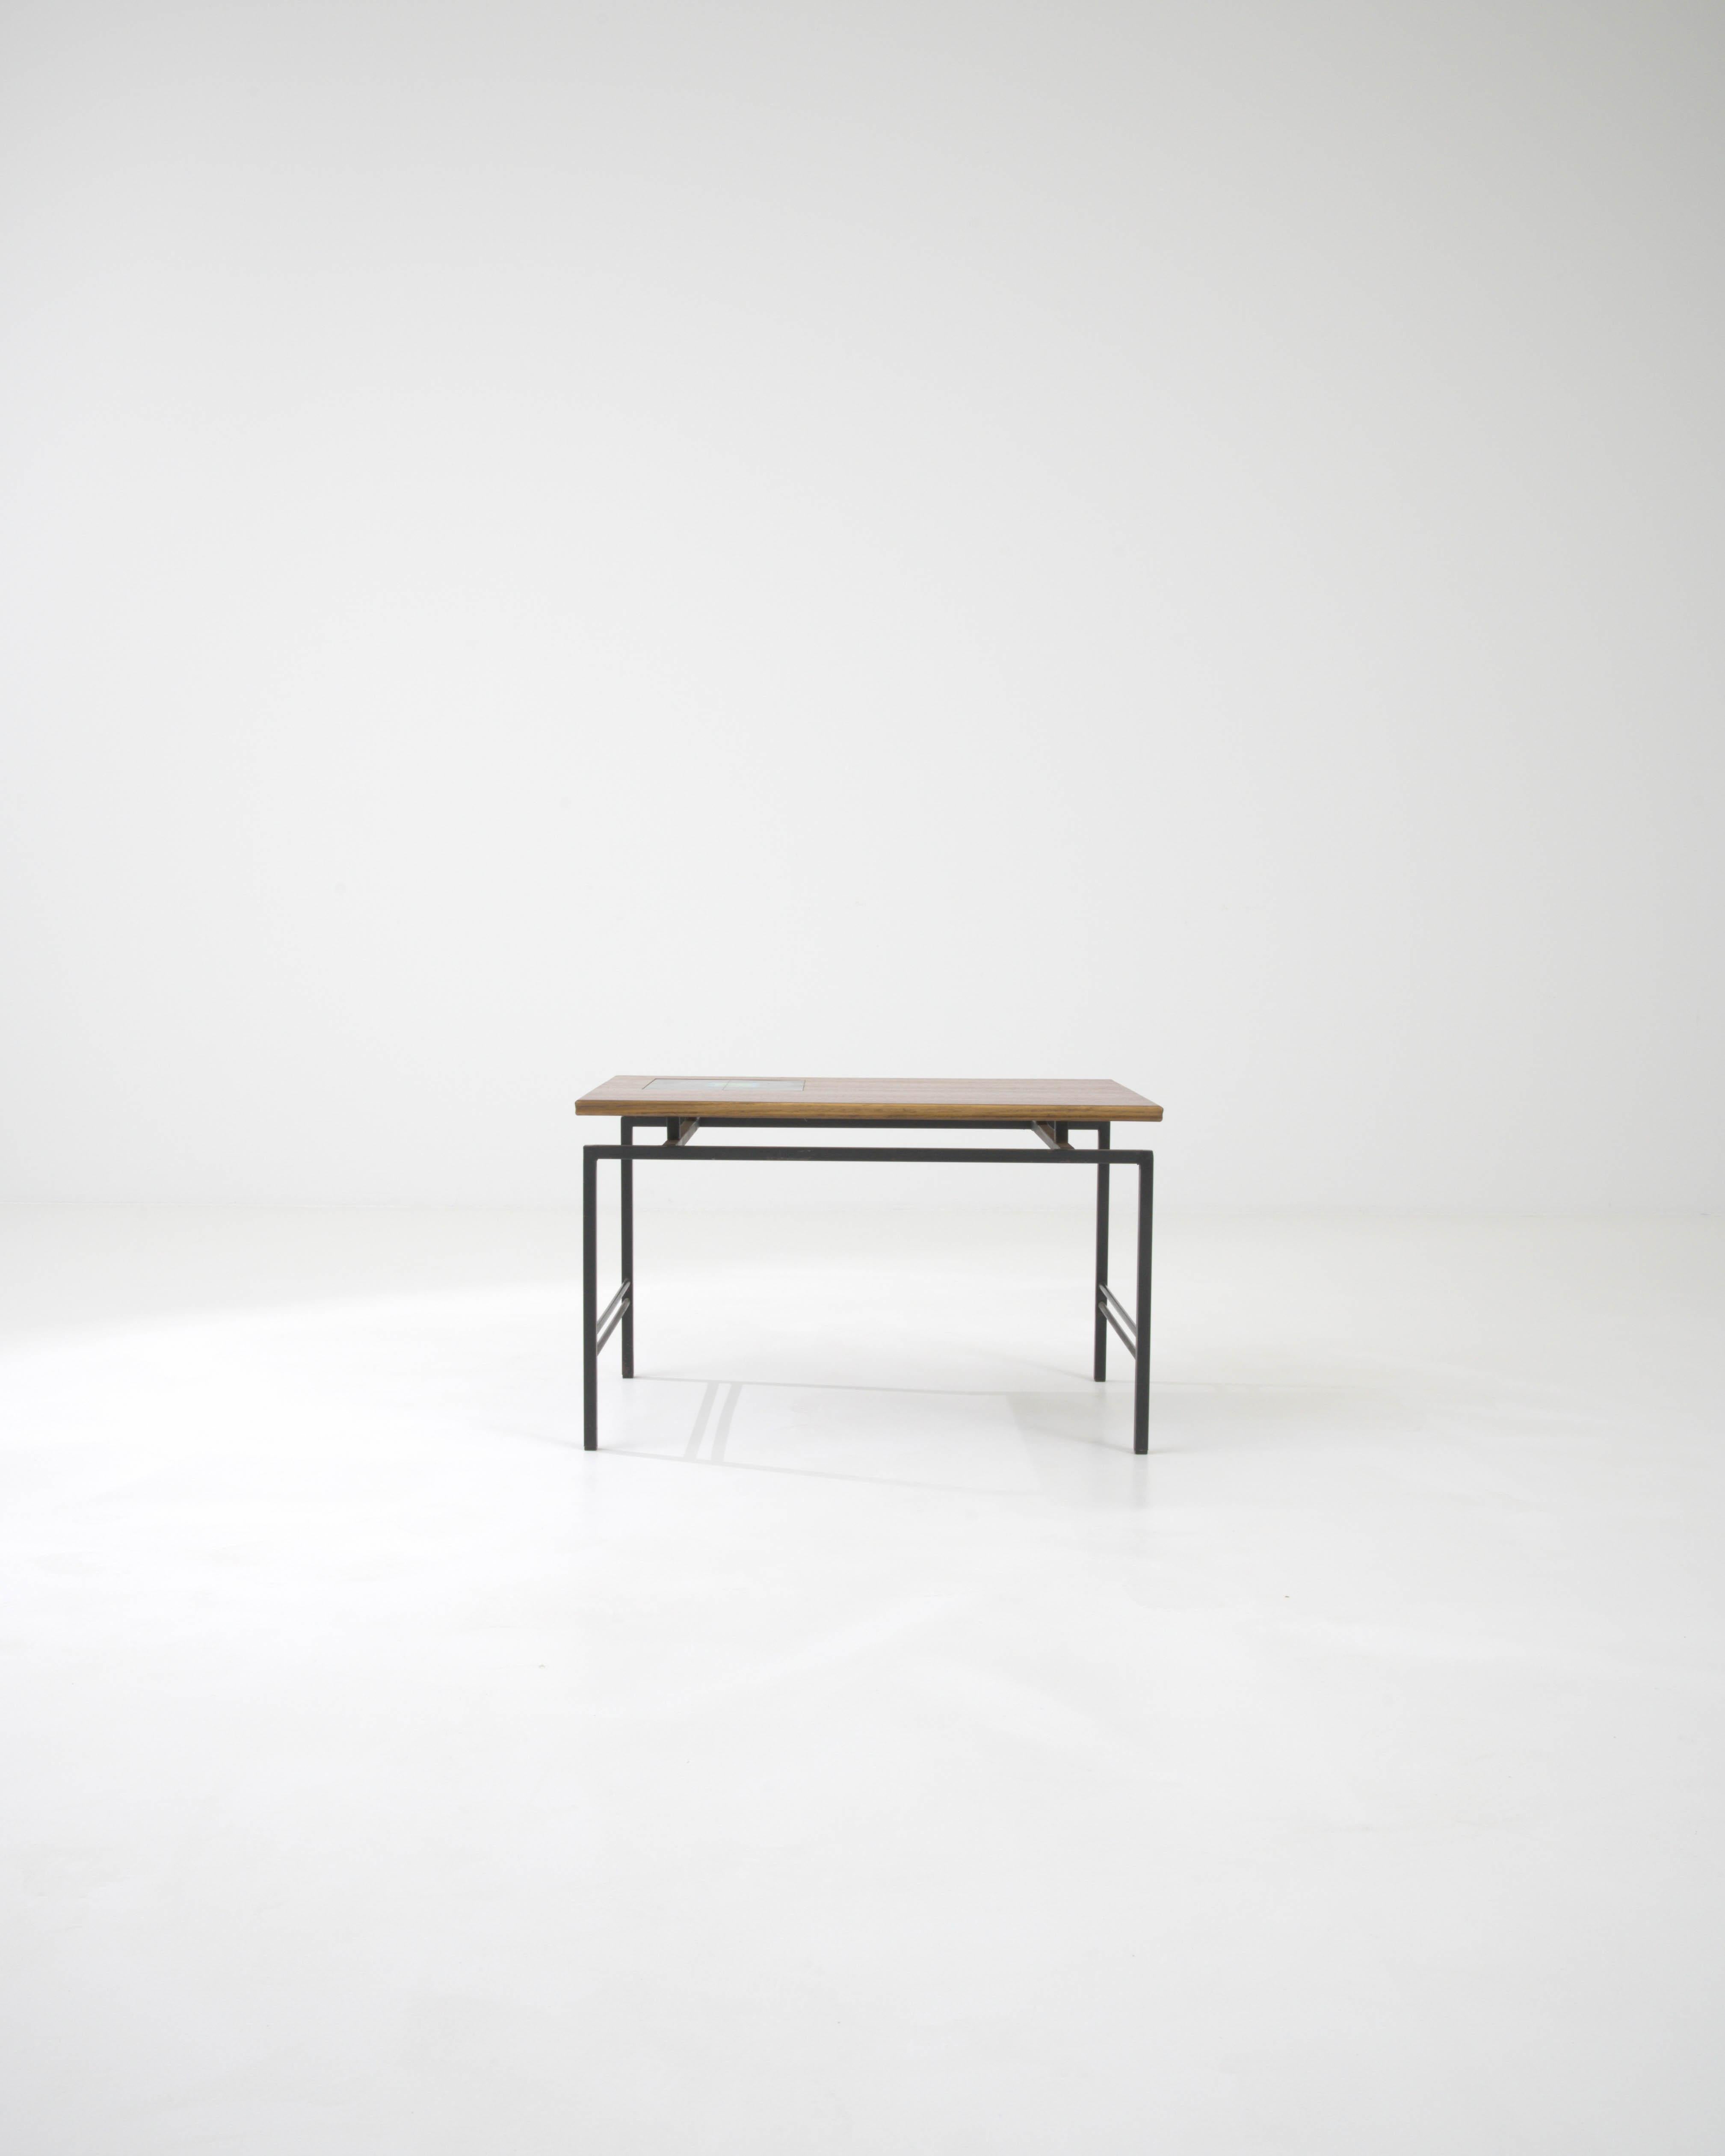 Cette table basse française du XXe siècle marie admirablement la métallurgie épurée à la chaleur organique du bois et à la touche artisanale de la céramique. Le cadre métallique robuste, fini dans un ton mat discret, offre un look industriel moderne